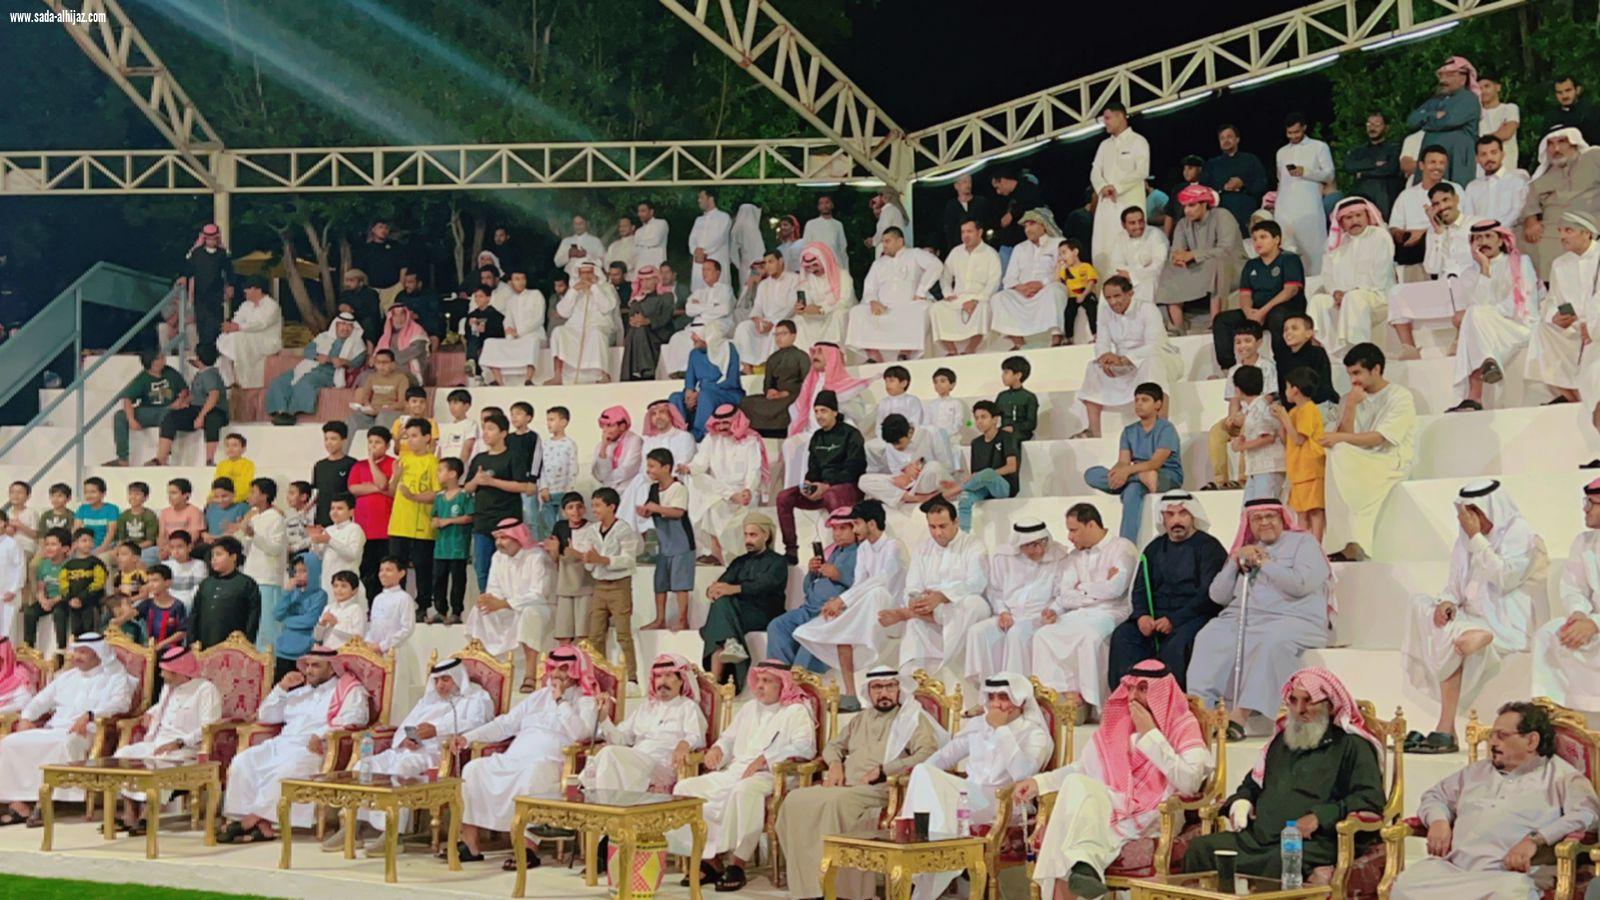 جمعية التنمية الأهلية بقلوة تنظم ليلة إبداع وتميز ضمن فعاليات مهرجان شتاء الباحة